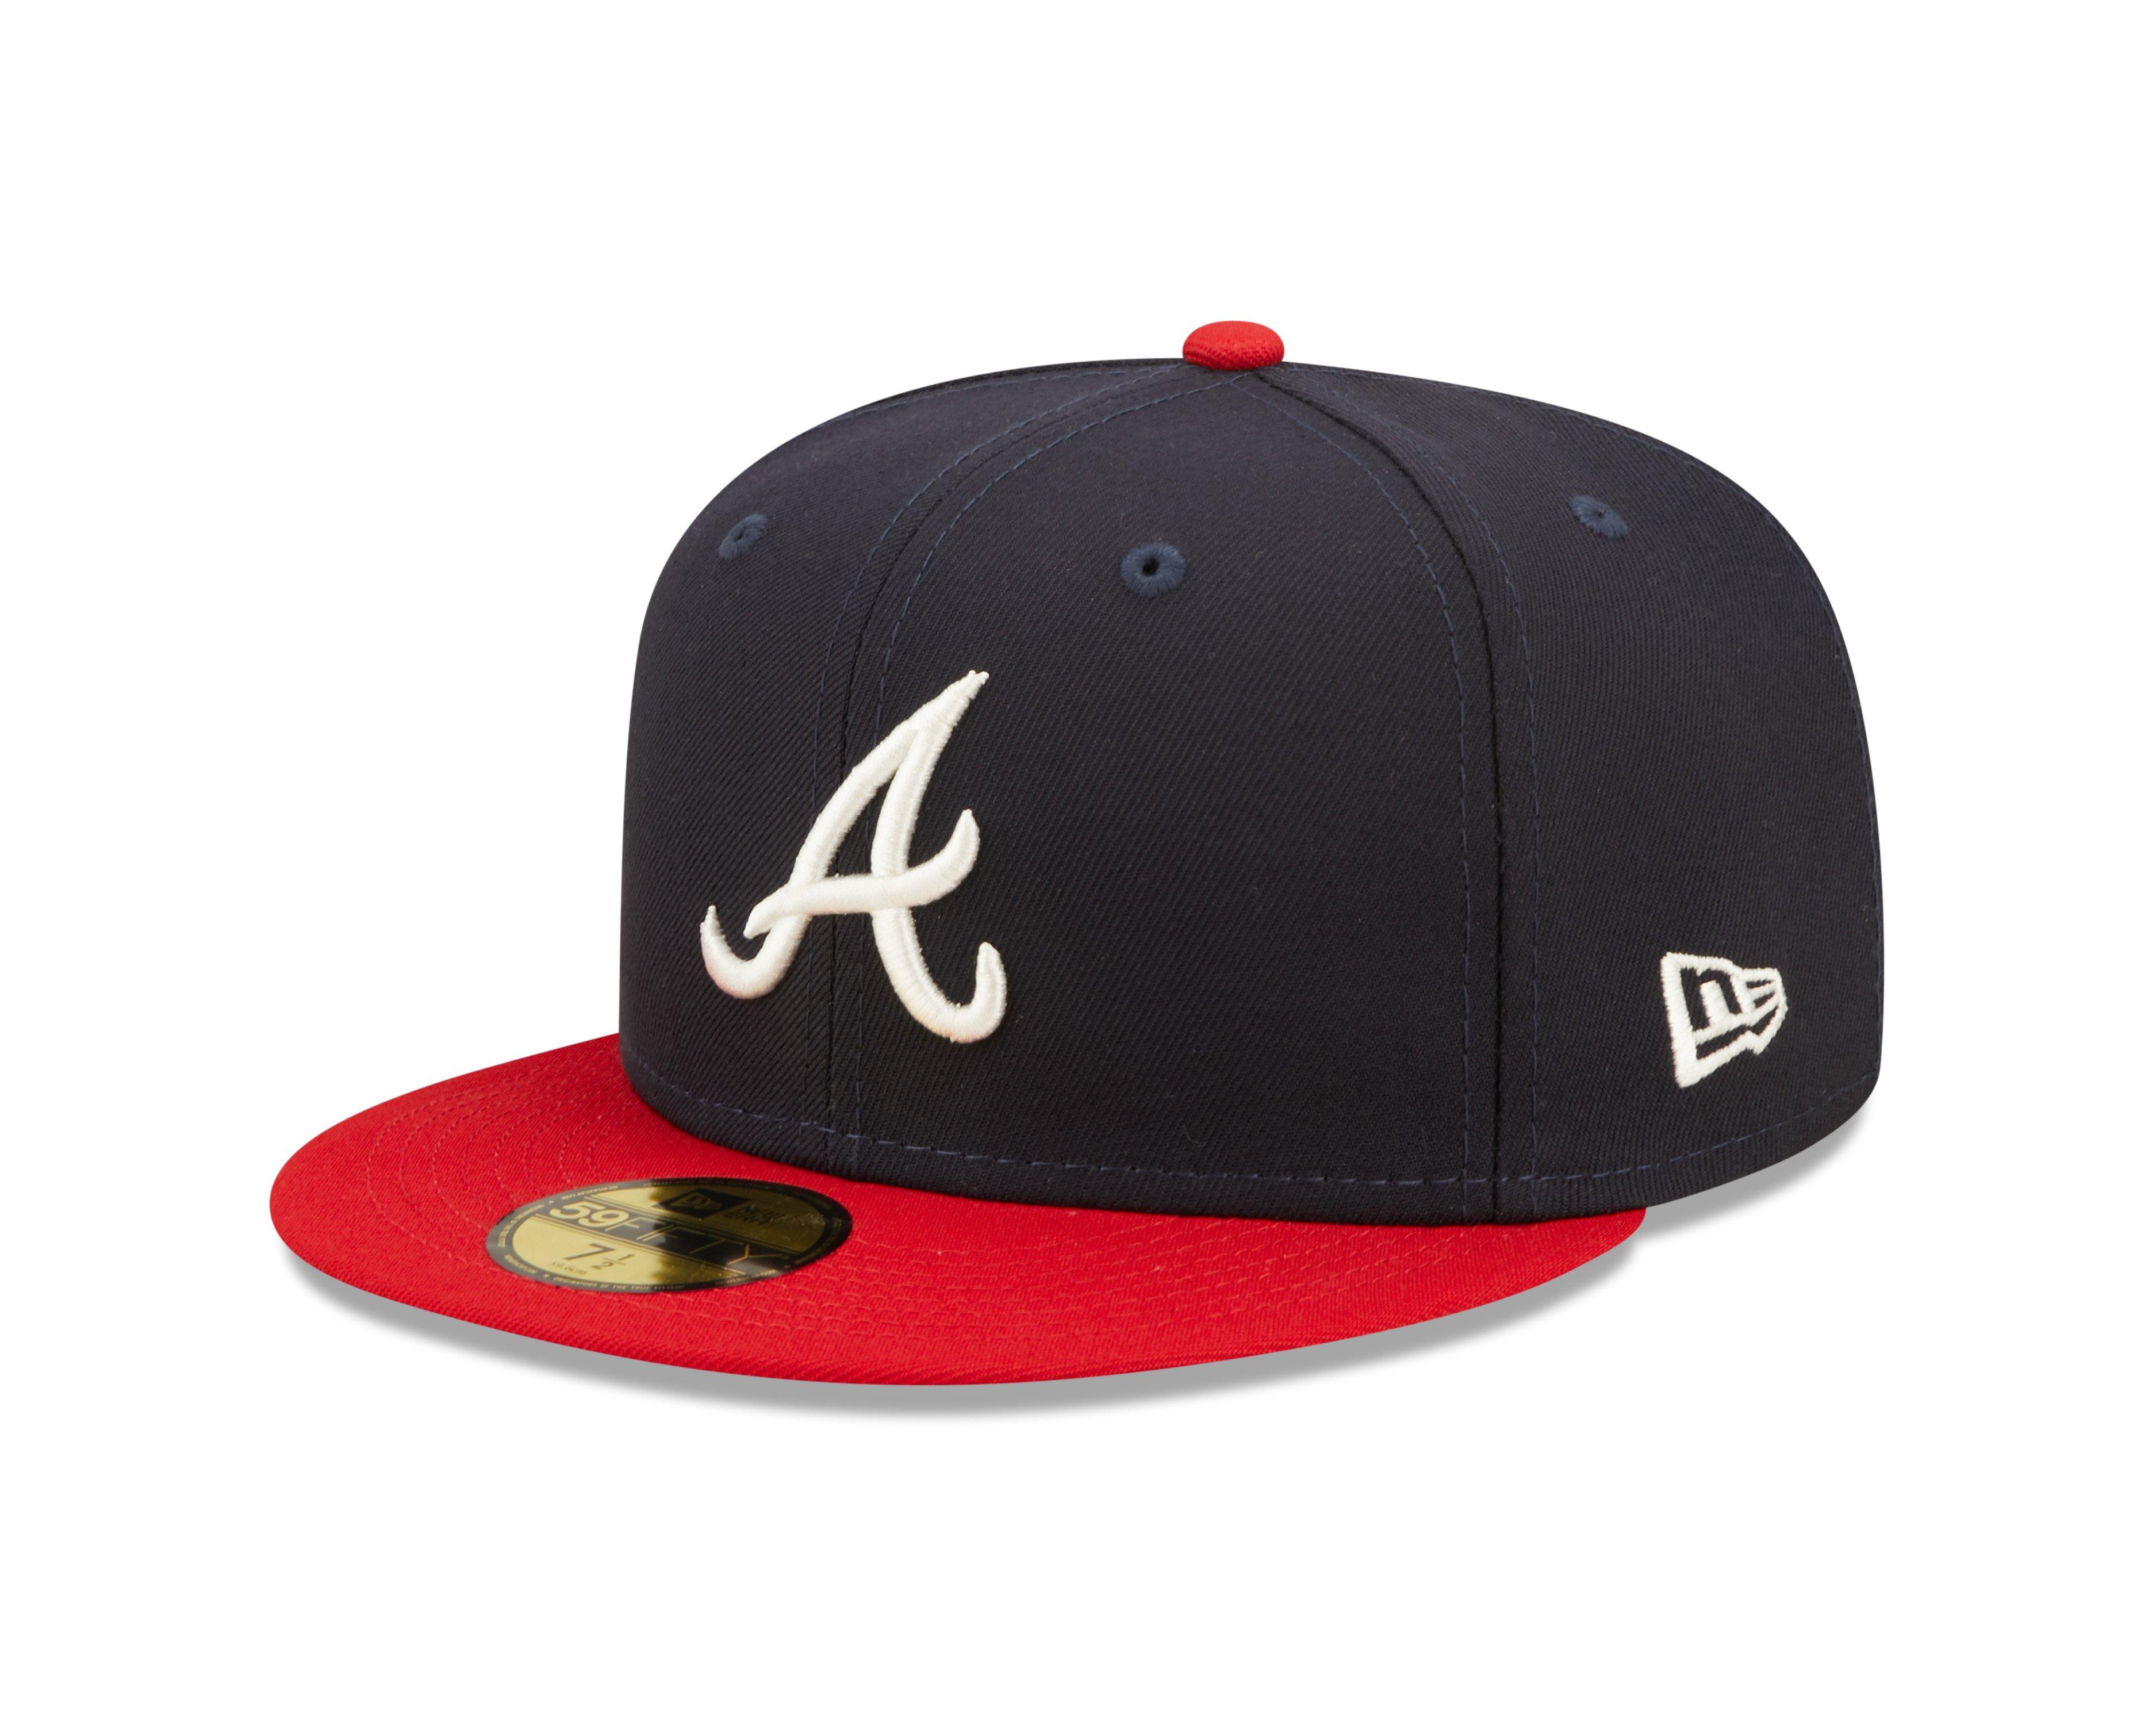 Atlanta Braves Winter Knit Hats & Beanies - Hibbett